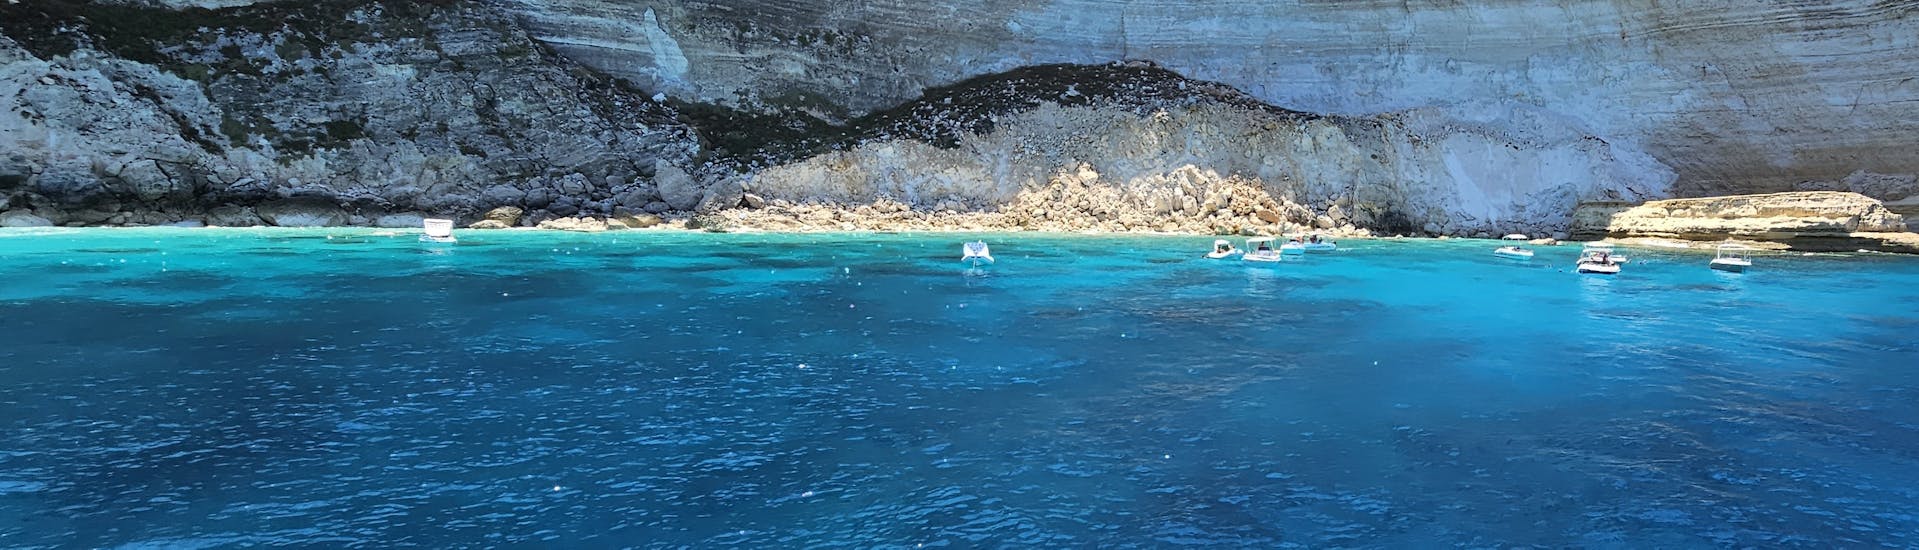 Gita in barca a Lampedusa con pranzo e soste per nuotare.